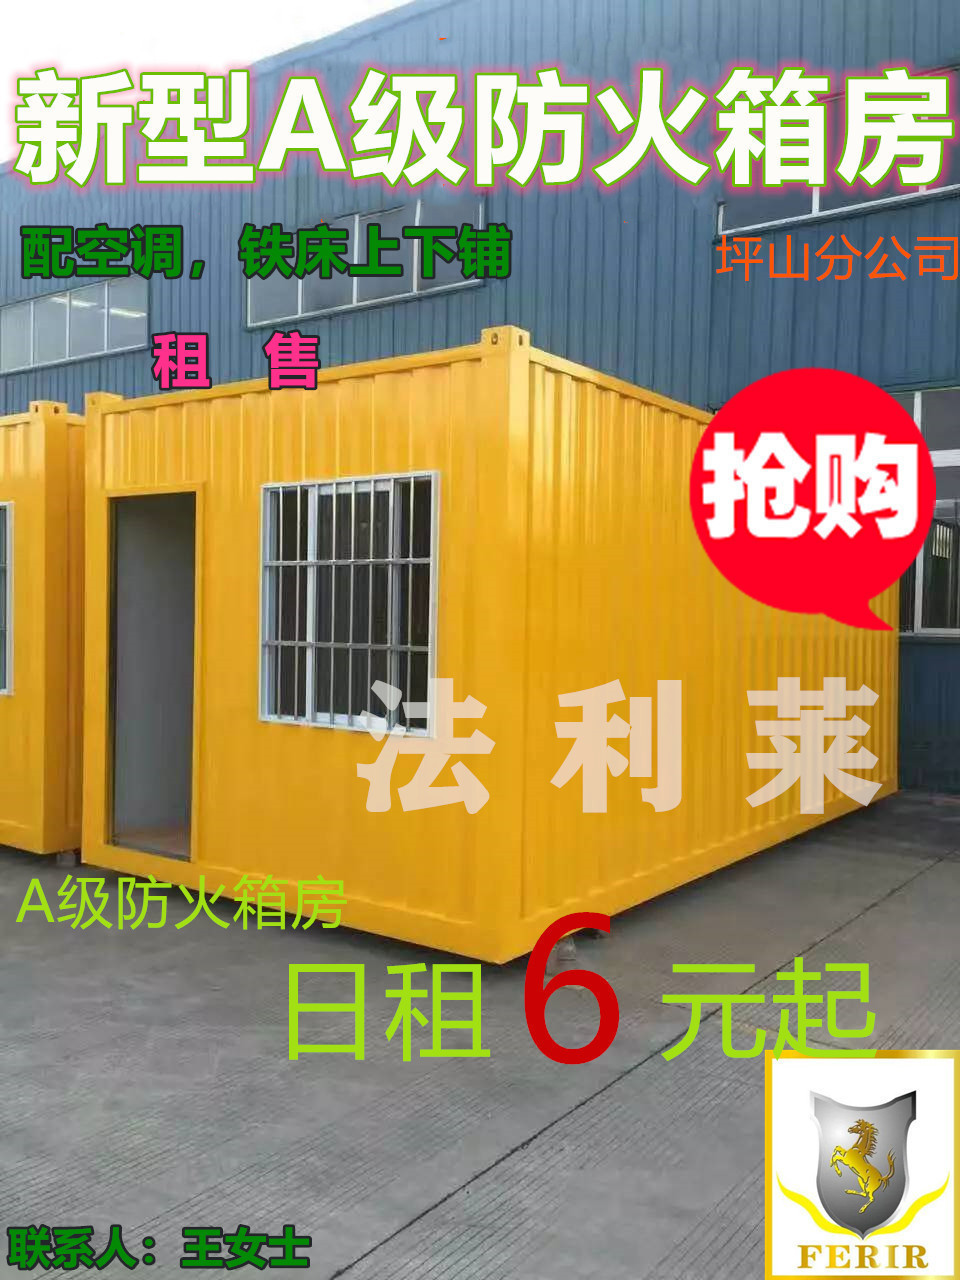 深圳市法利莱模块化房屋科技有限公司